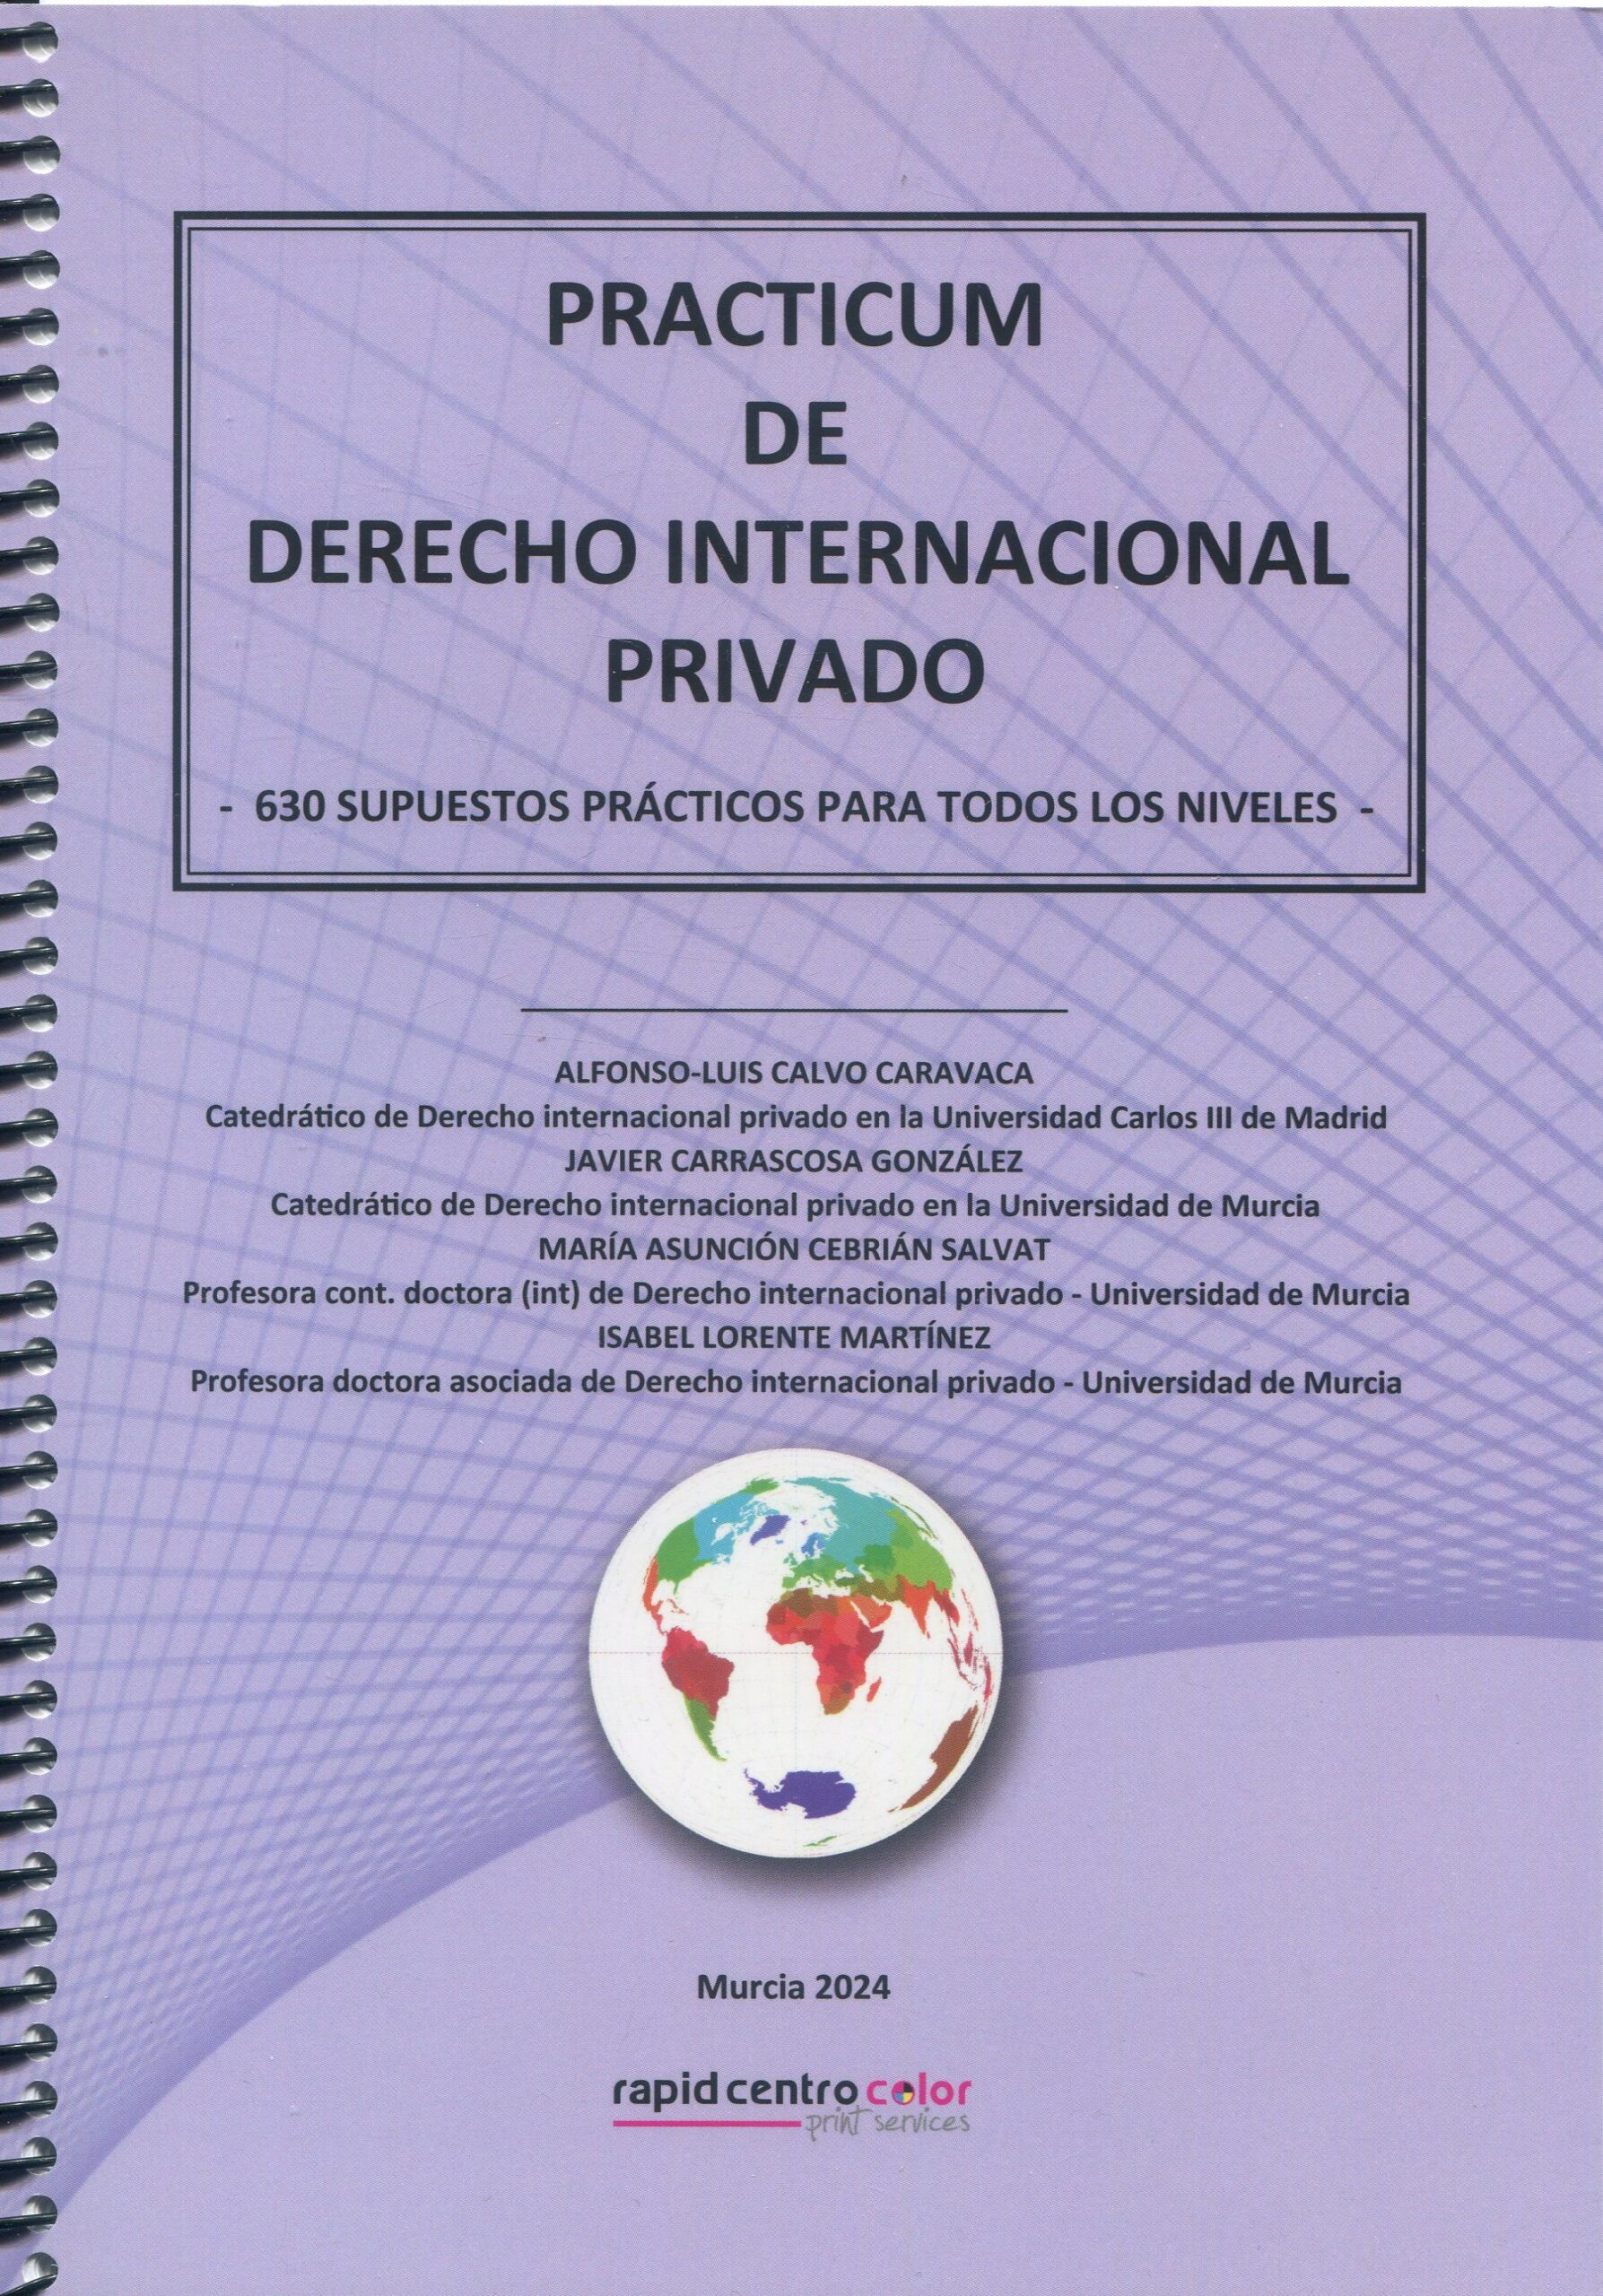 Practicum de Derecho internacional privado